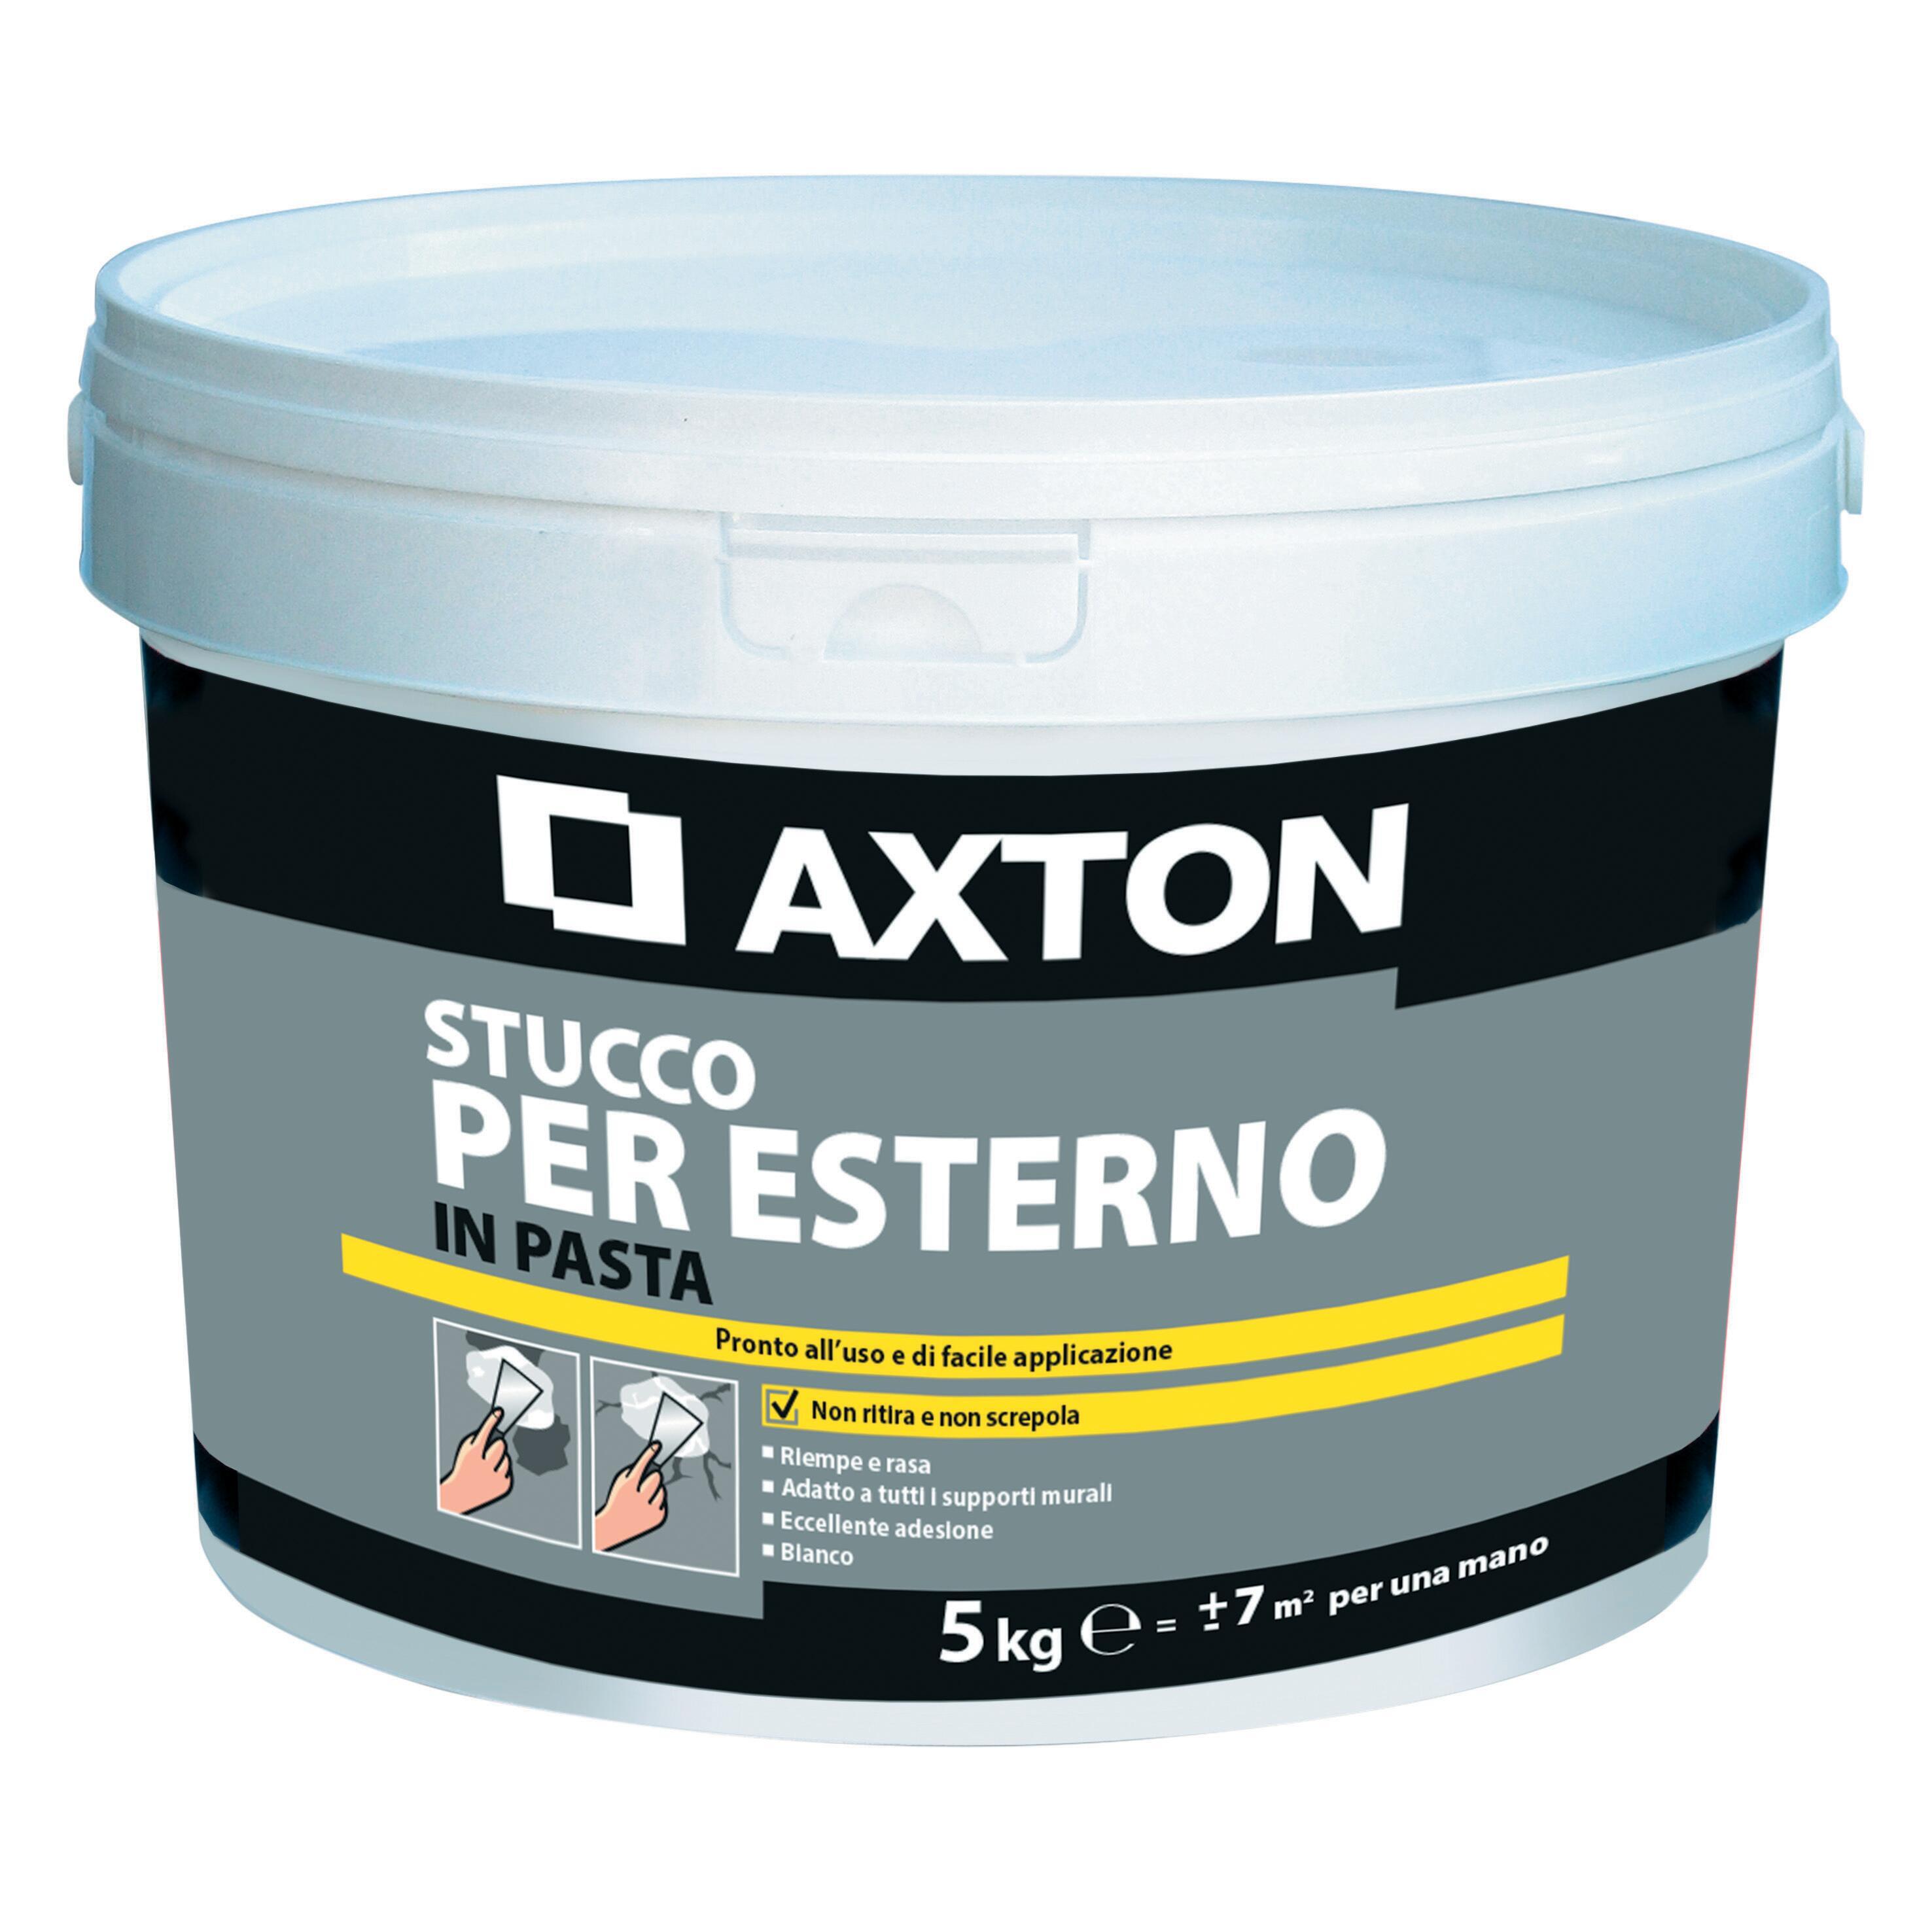 Stucco in pasta AXTON per esterno 5 kg bianco - 1